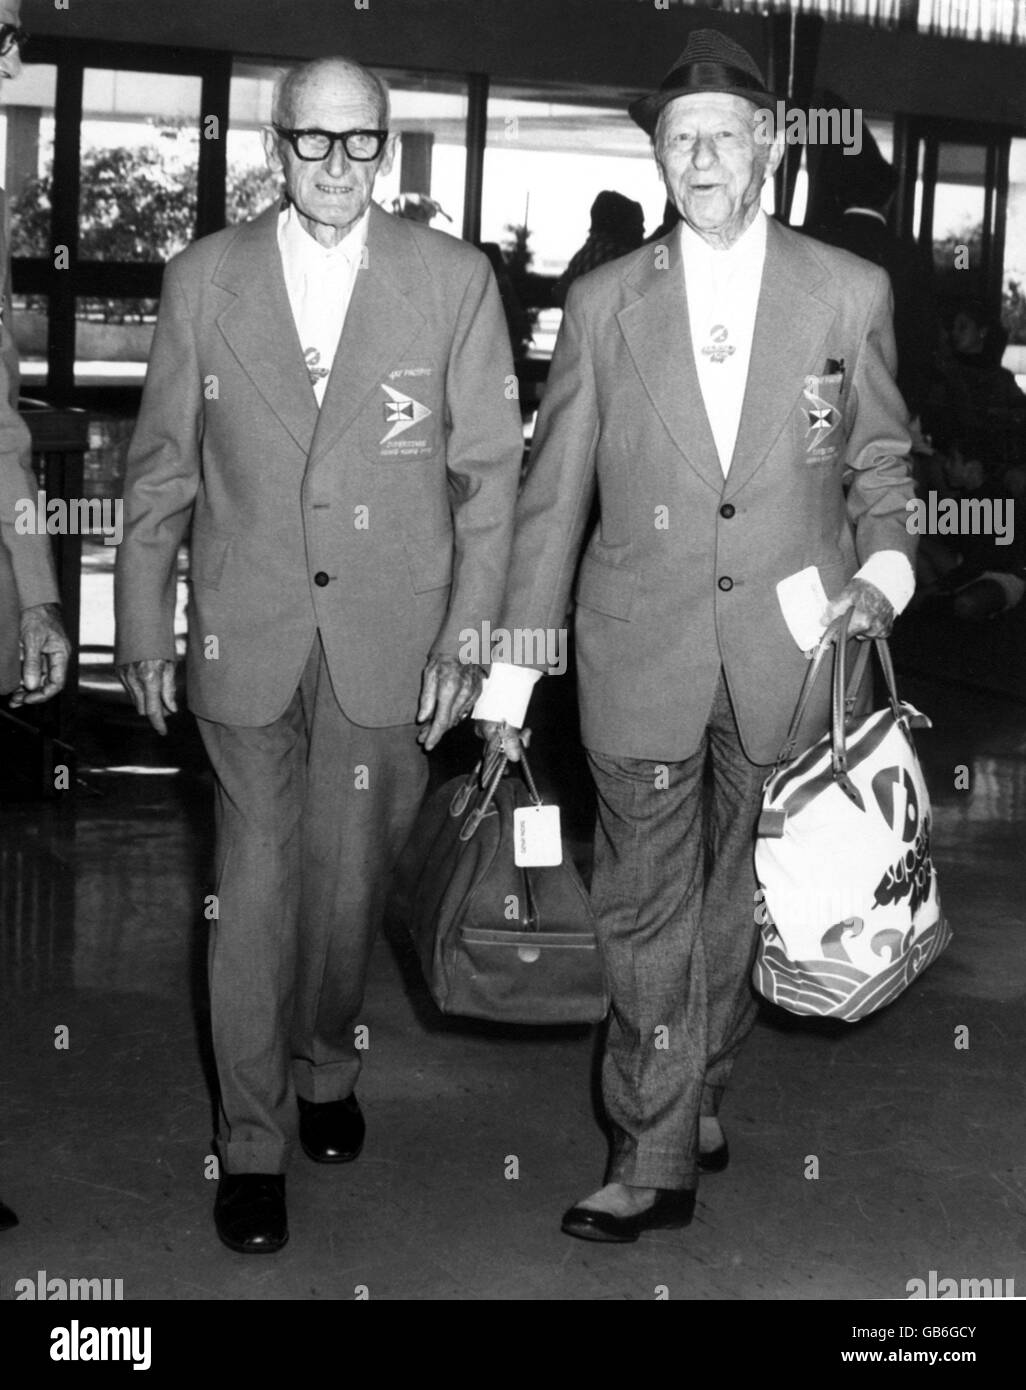 (L-R) antiguos muletas de prueba Harold Larwood y Bert Oldfield, parte de la fiesta australiana Superstars, a su llegada al aeropuerto Foto de stock